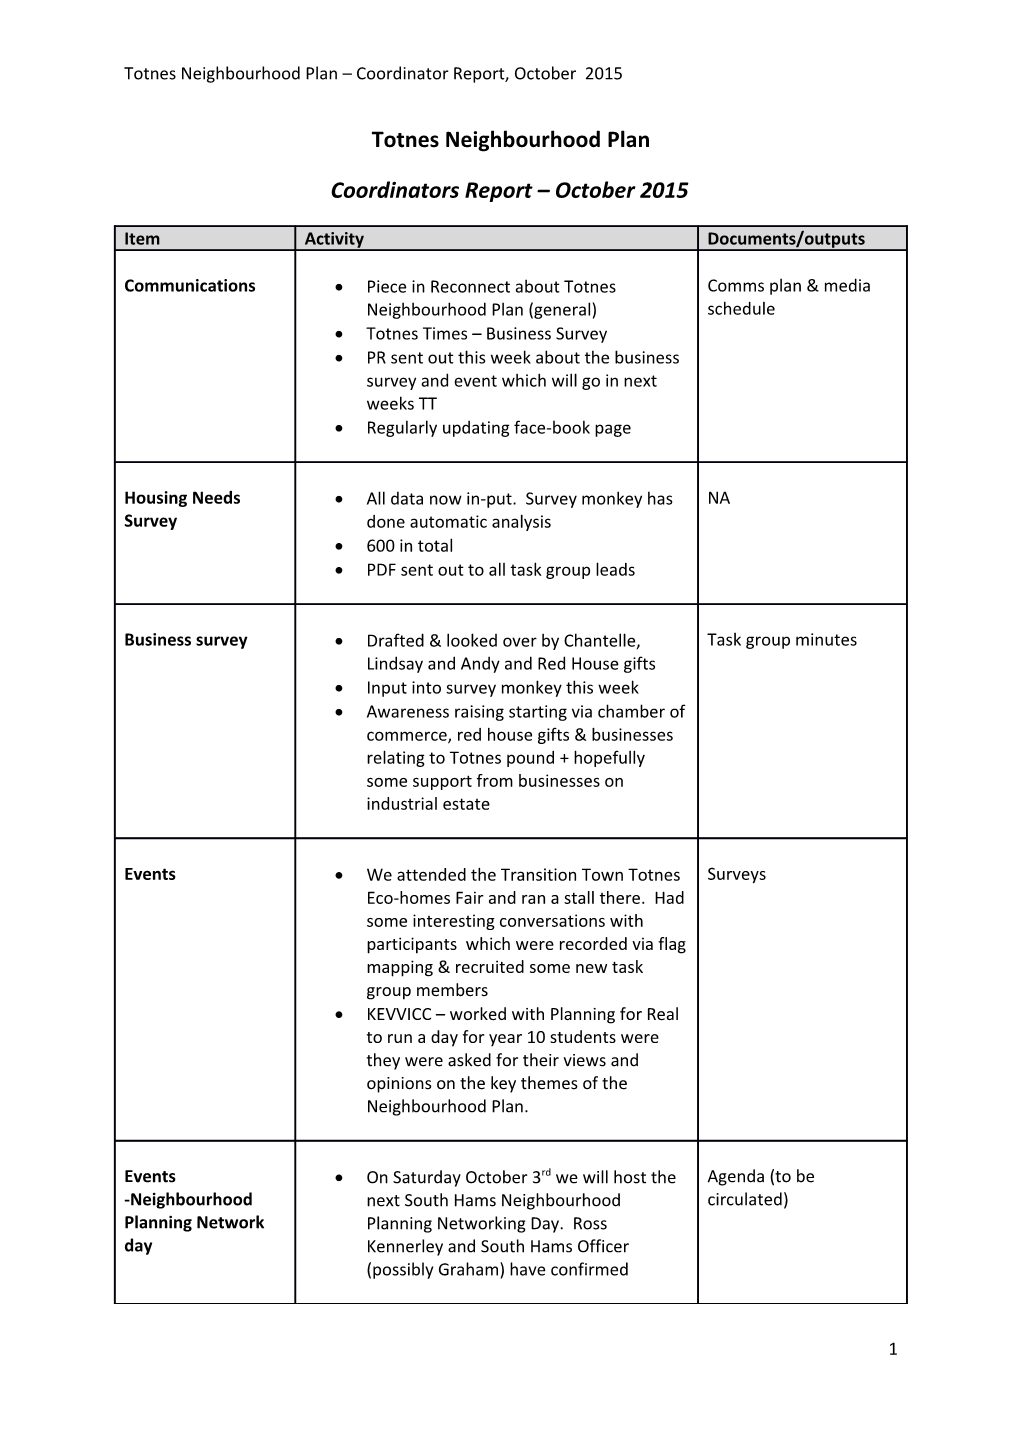 Totnes Neighbourhood Plan Coordinator Report, October 2015